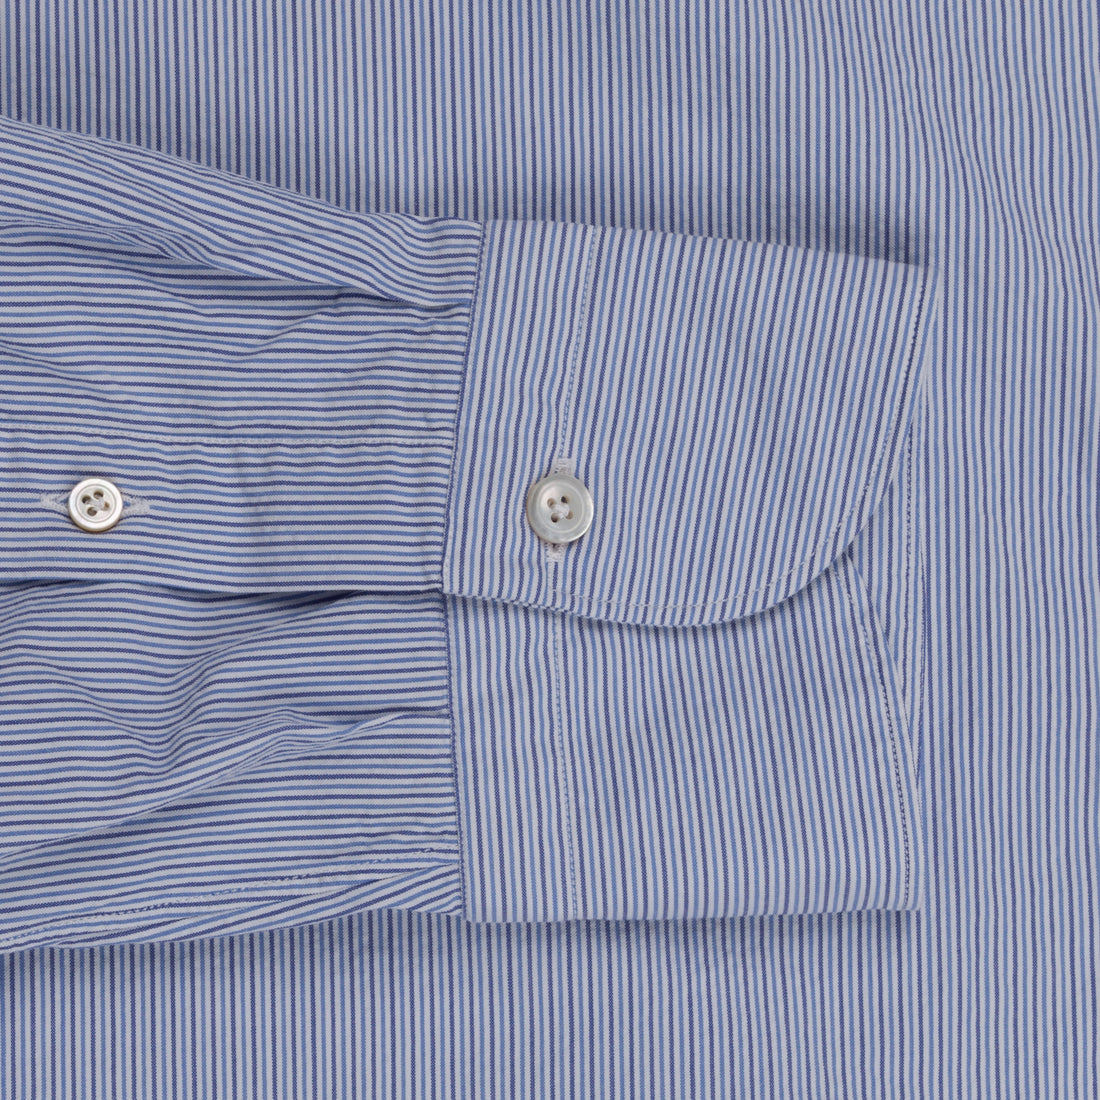 Finamore Gaeta shirt Sergio collar seersucker fine blue navy stripe